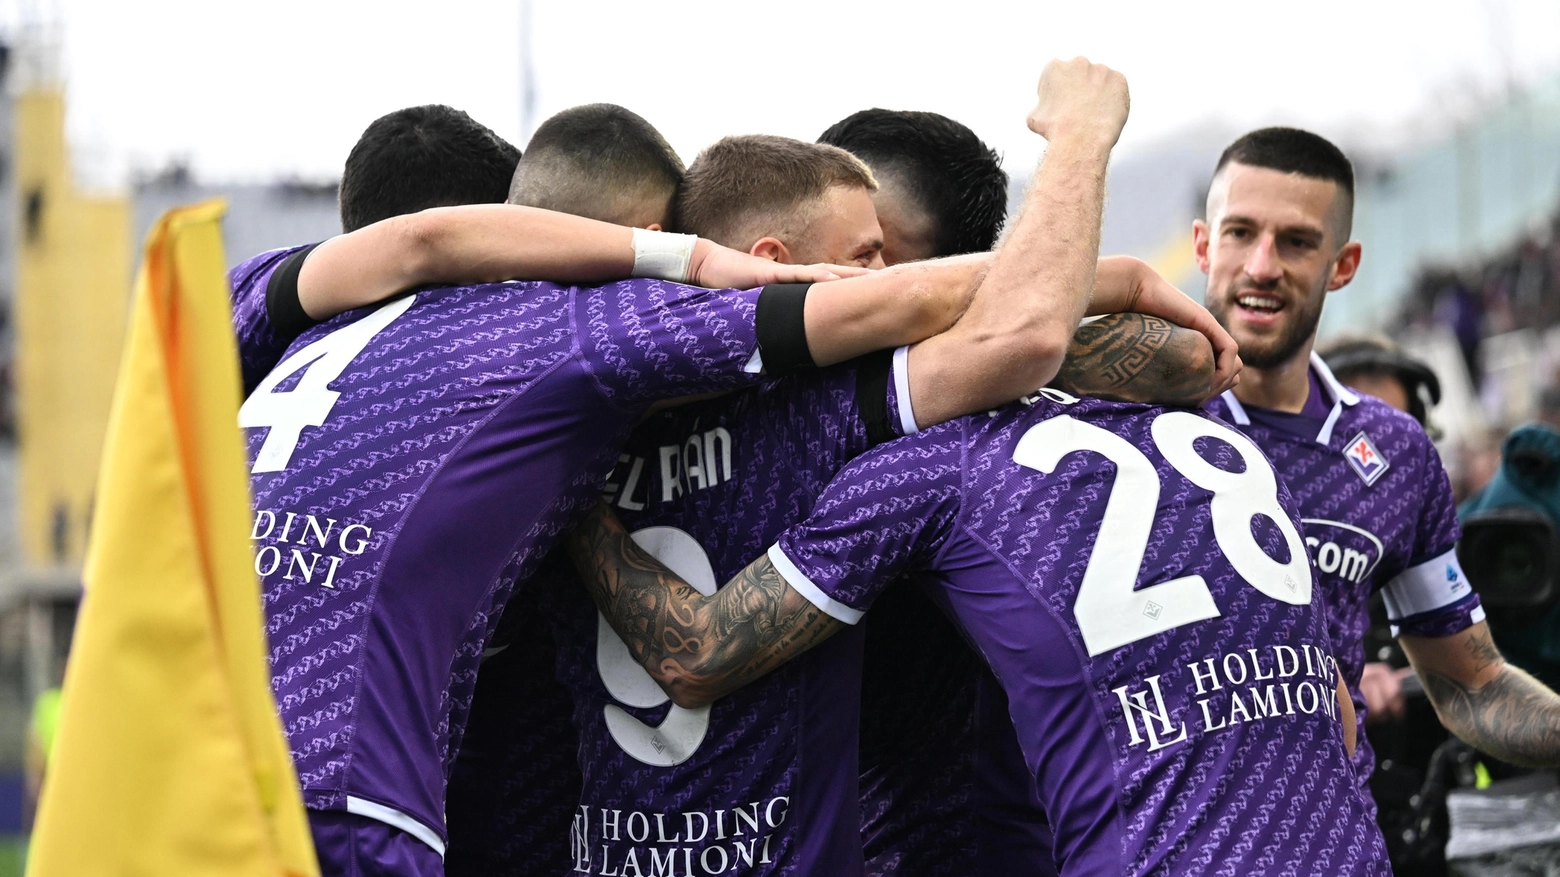 A Nyon la Fiorentina torna protagonista in Conference League nel sorteggio degli Ottavi. Out clamoroso di Eintracht Francoforte e Betis Siviglia